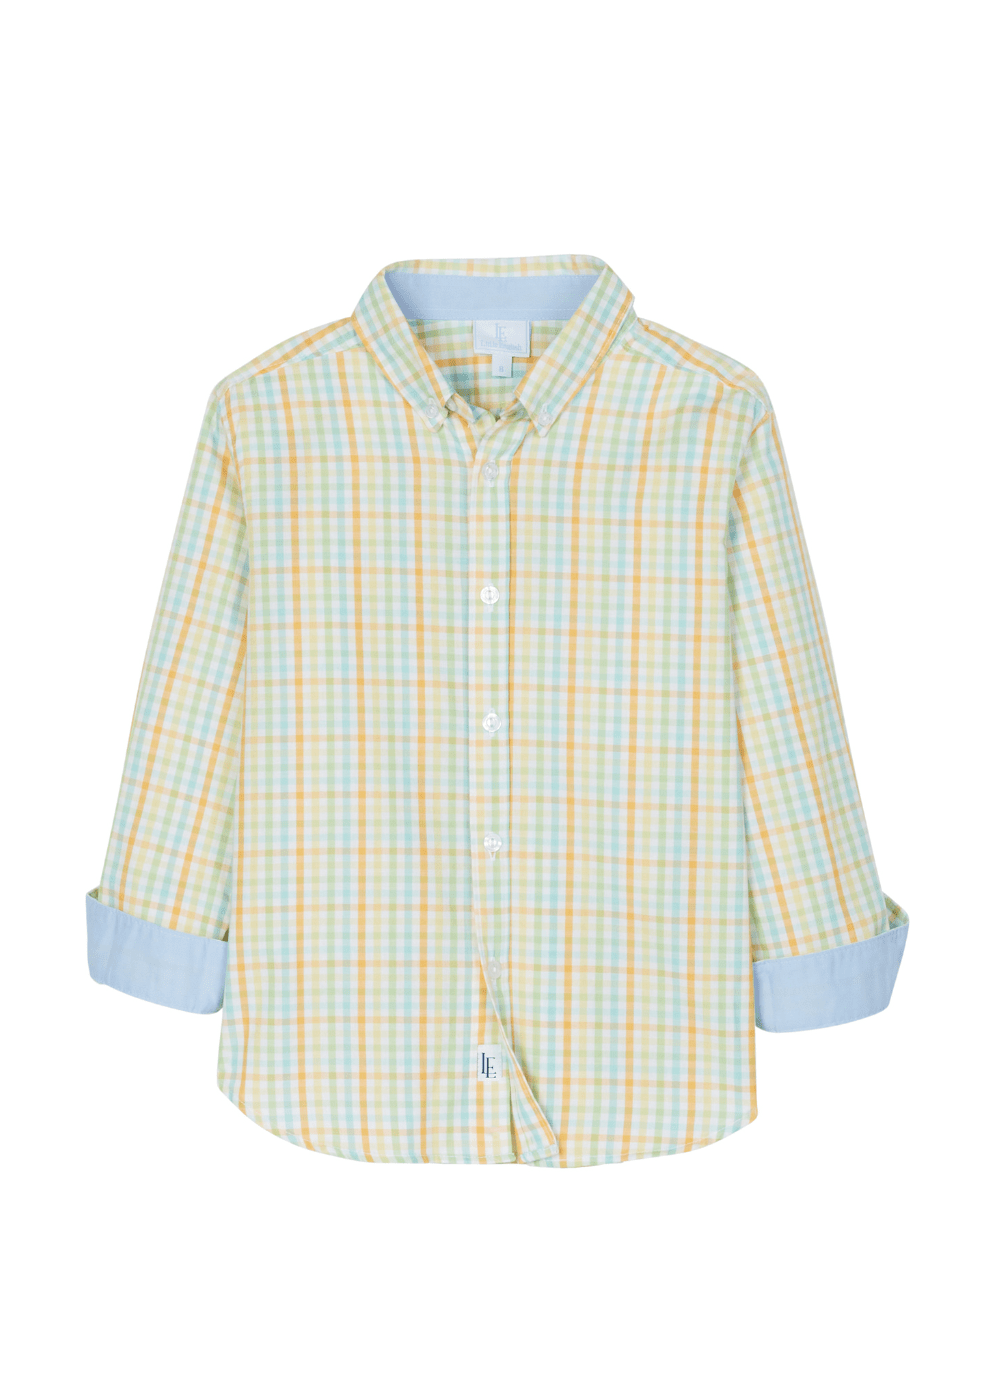 seguridadindustrialcr boy's check button down shirt for spring